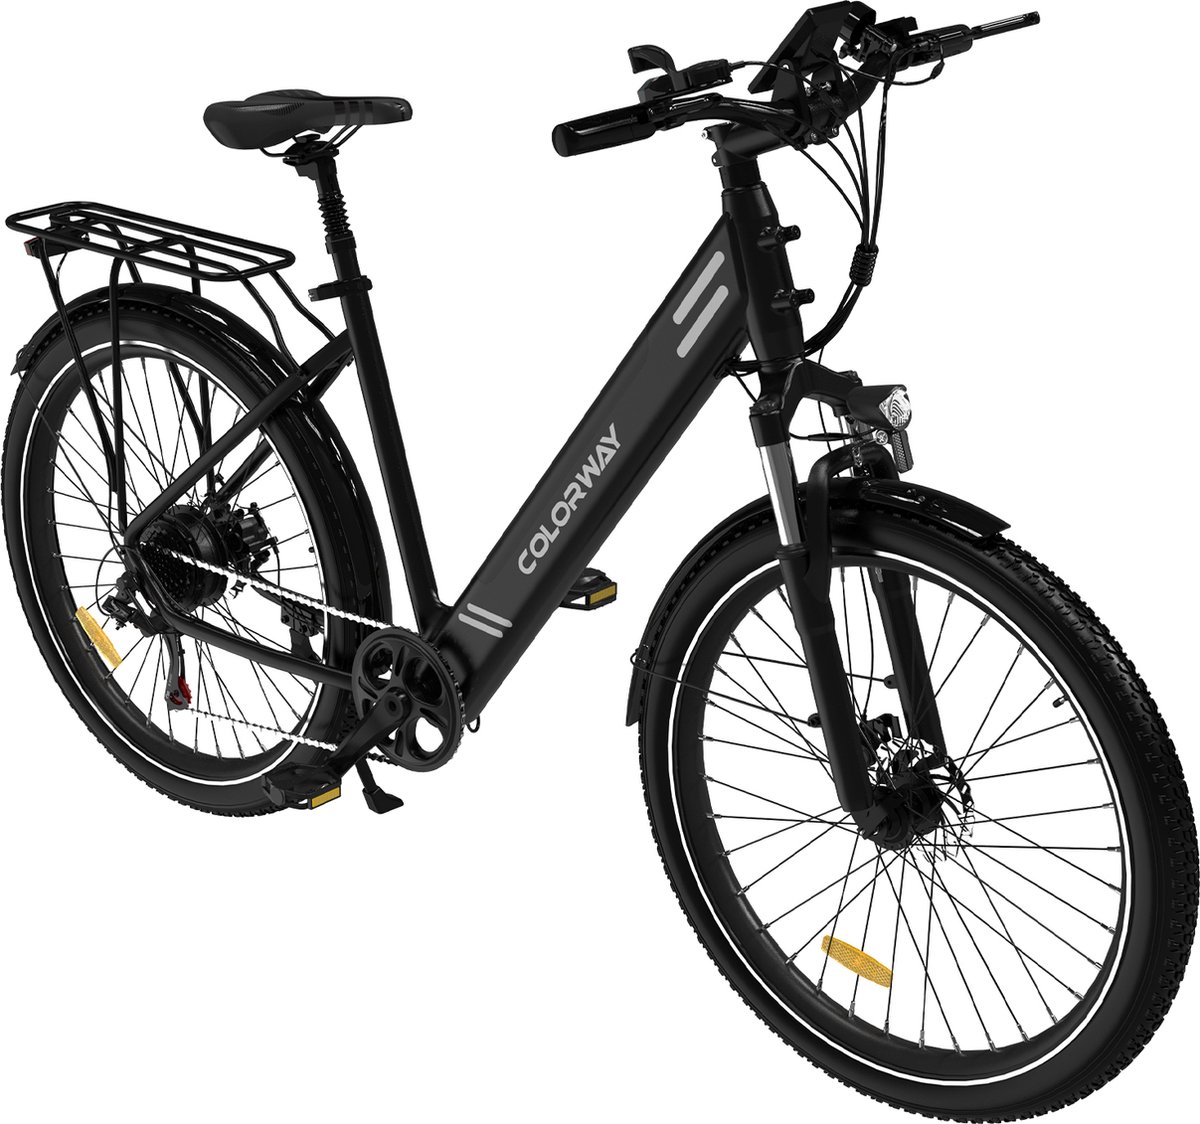 P4B - Elektrische fiets - E-bike - Stadsfiets - Fiets - 1 Jaar Garantie - Legaal openbare weg